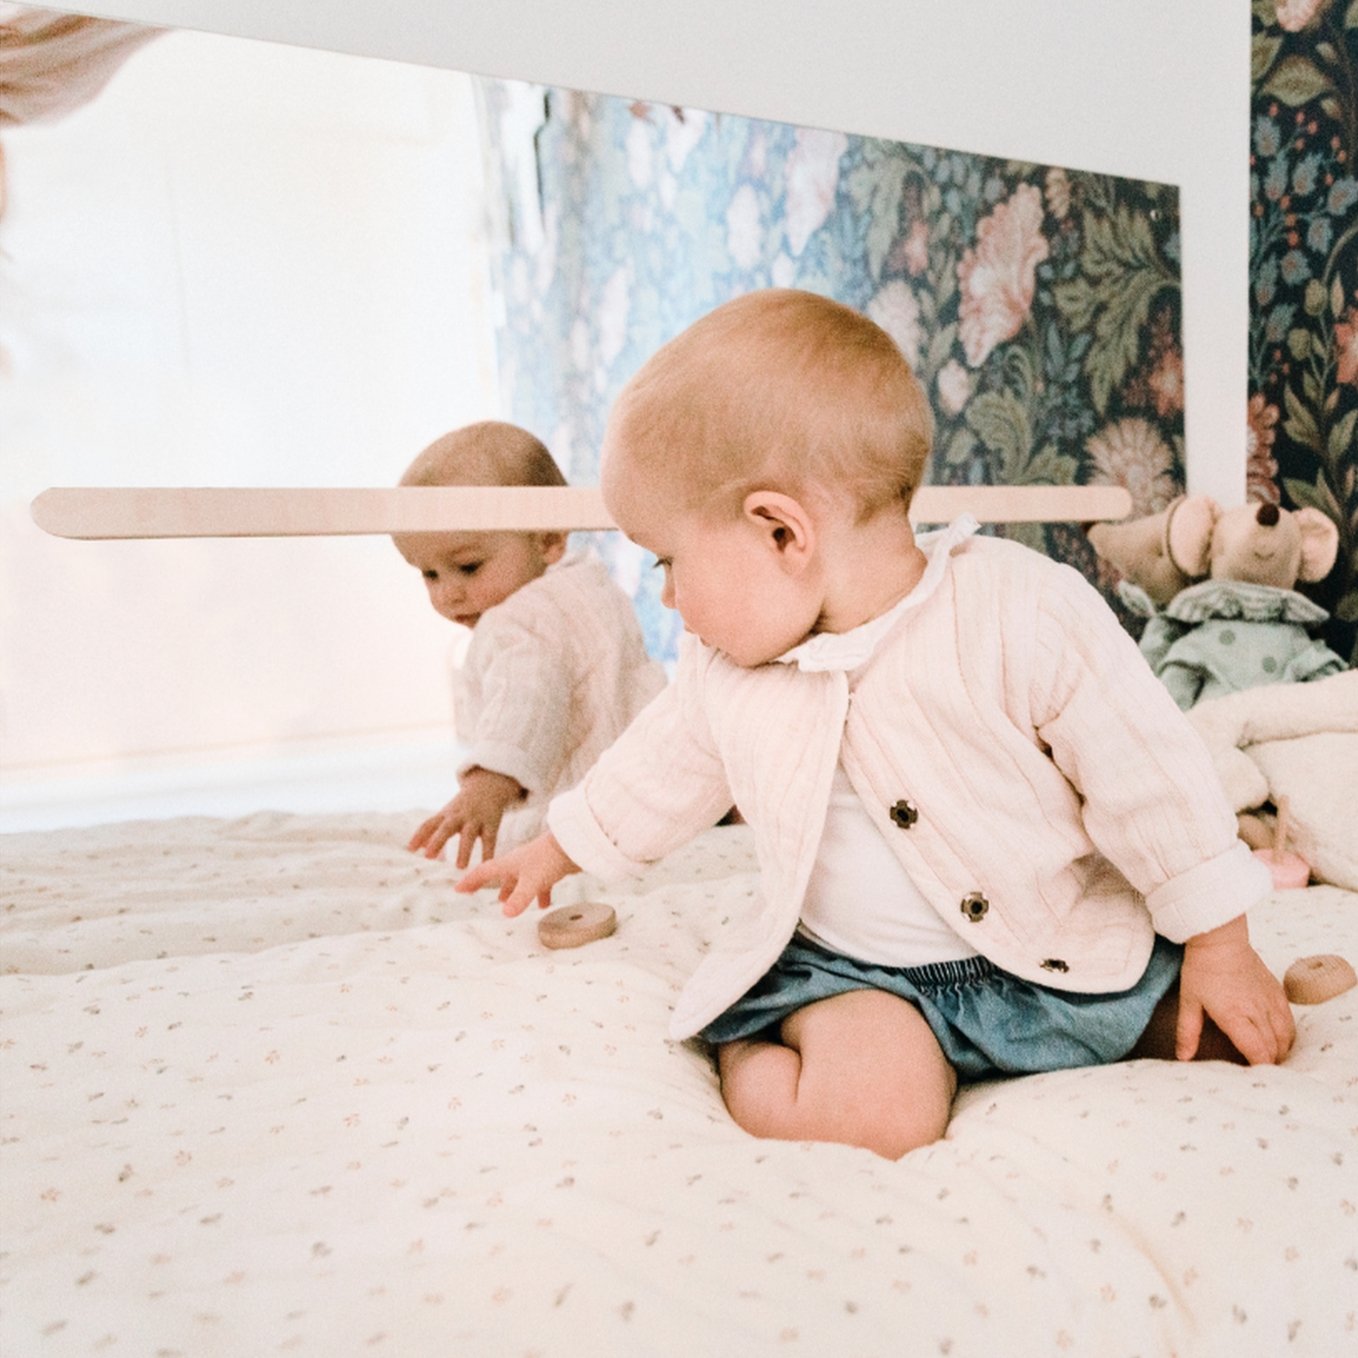 Le miroir: un outil d'apprentissage pour bébé